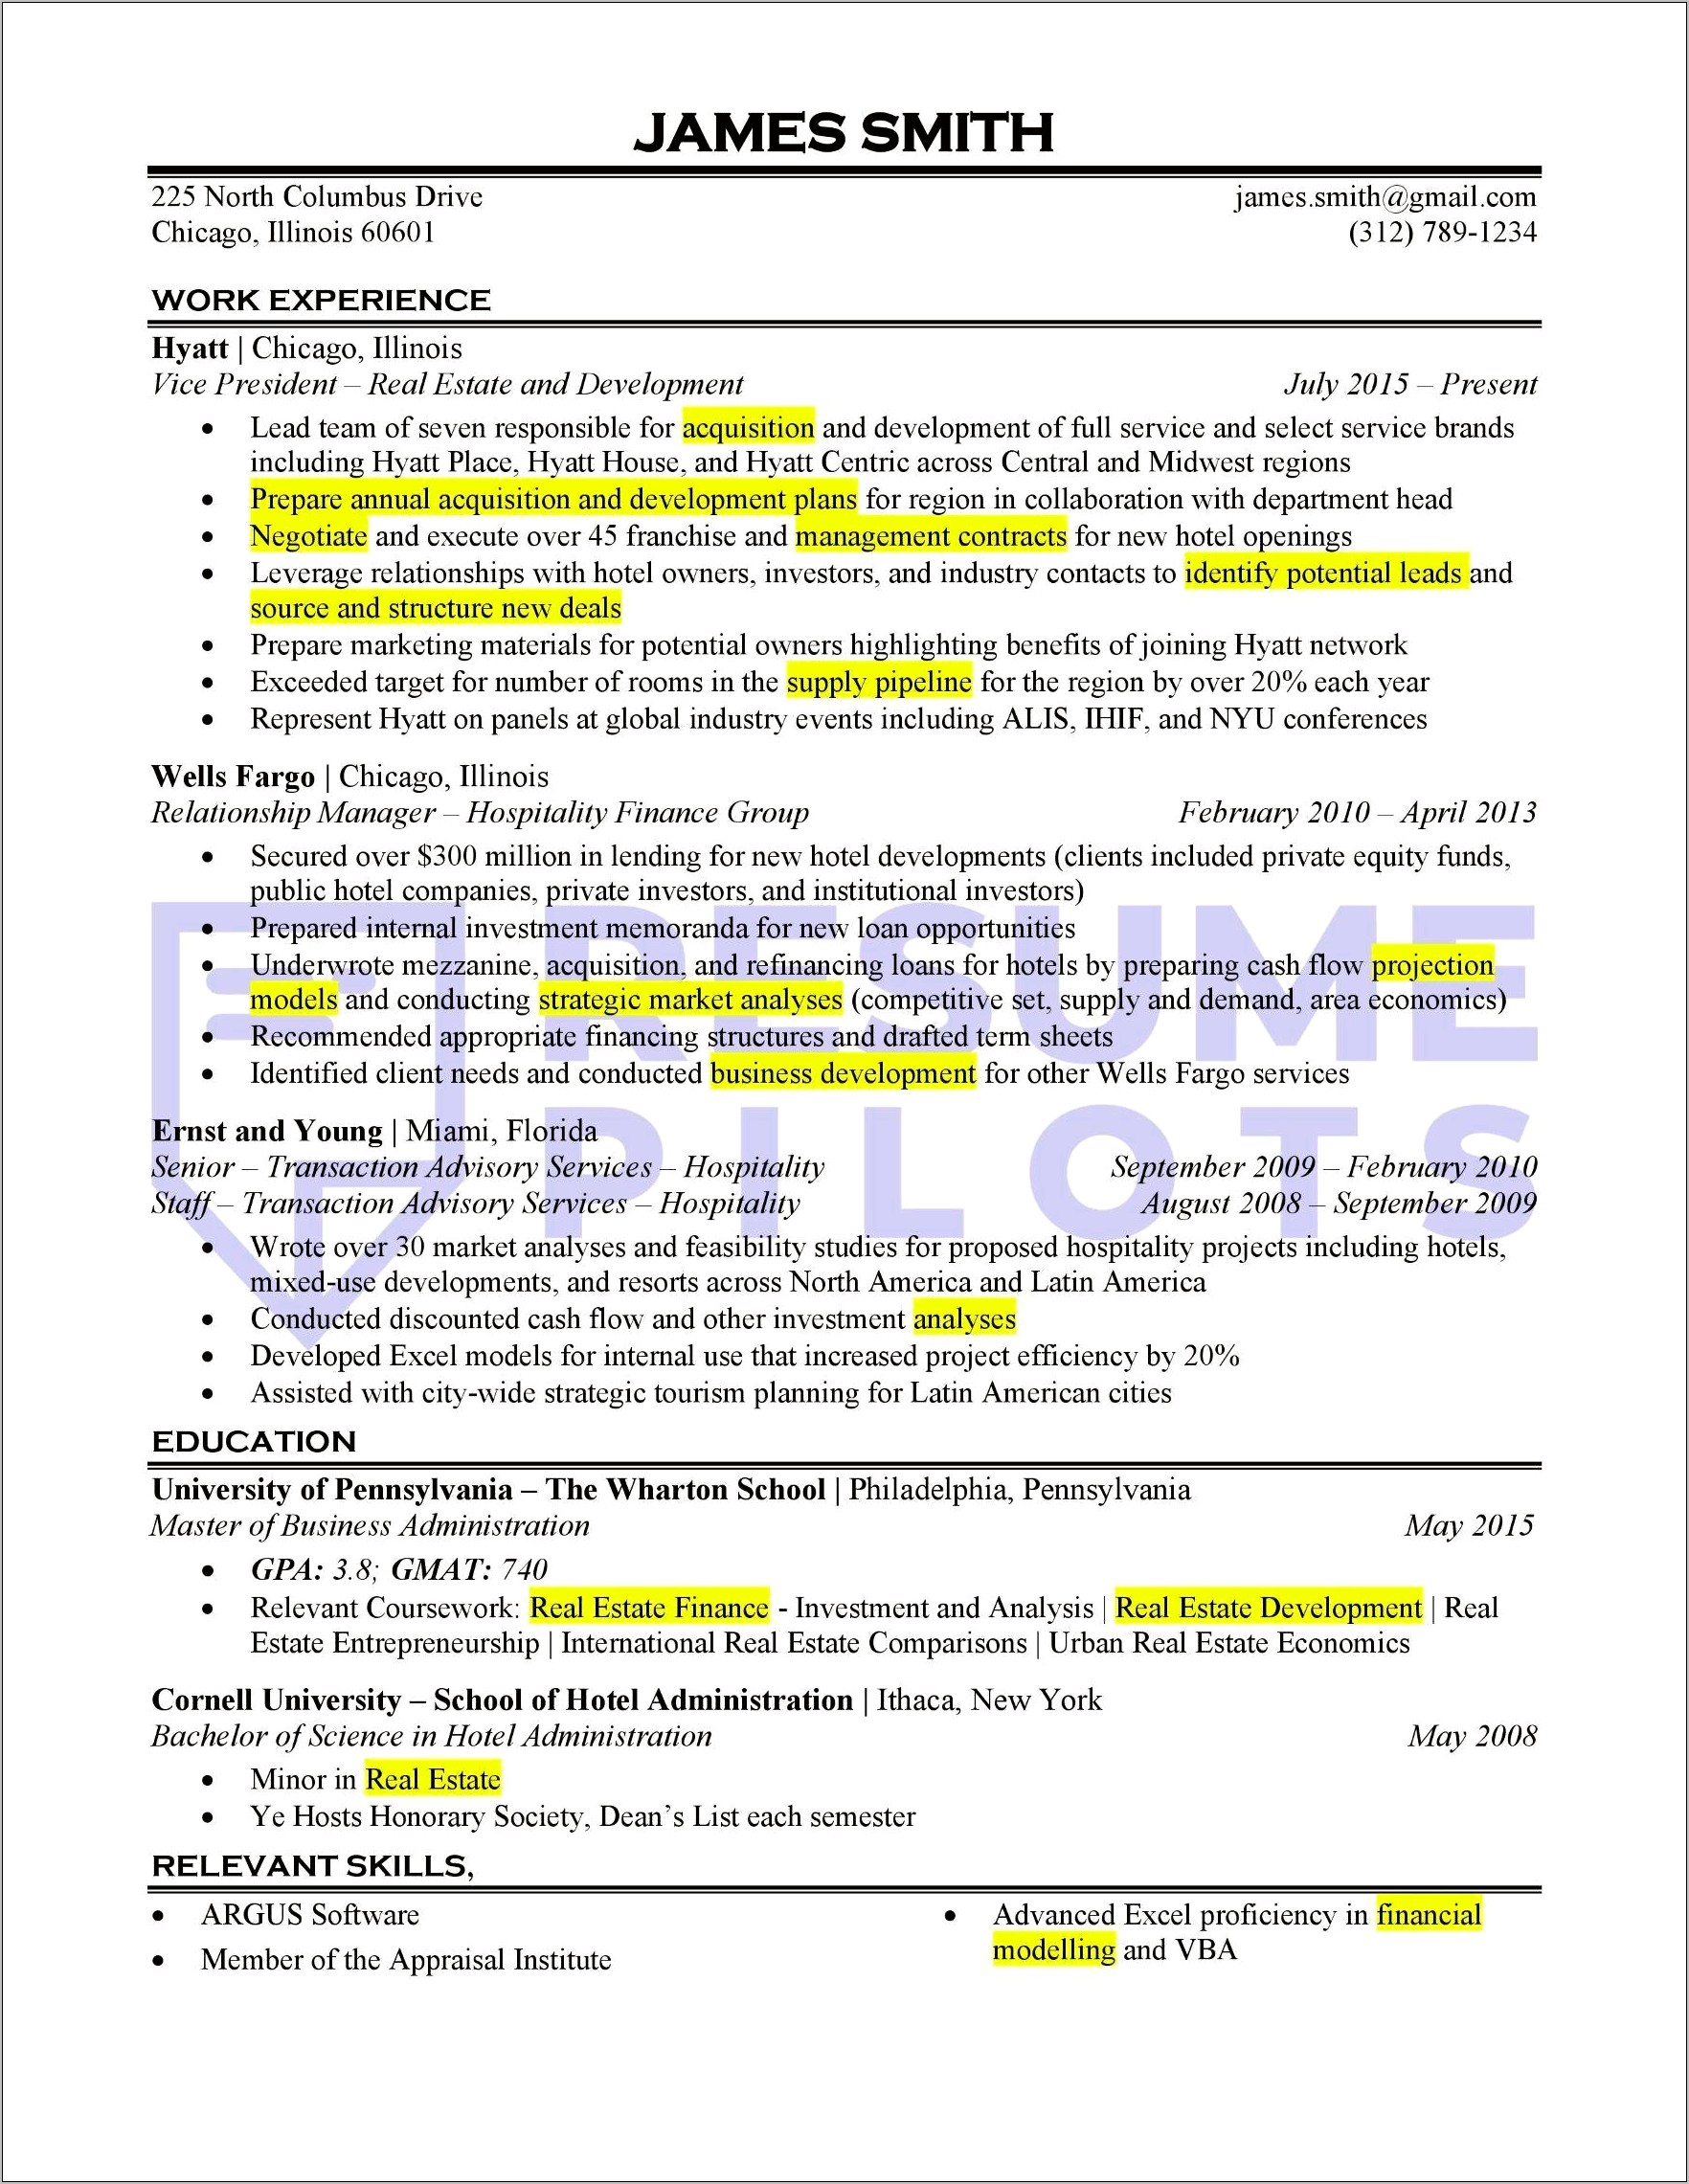 Resume And Job Description Keyword Parser